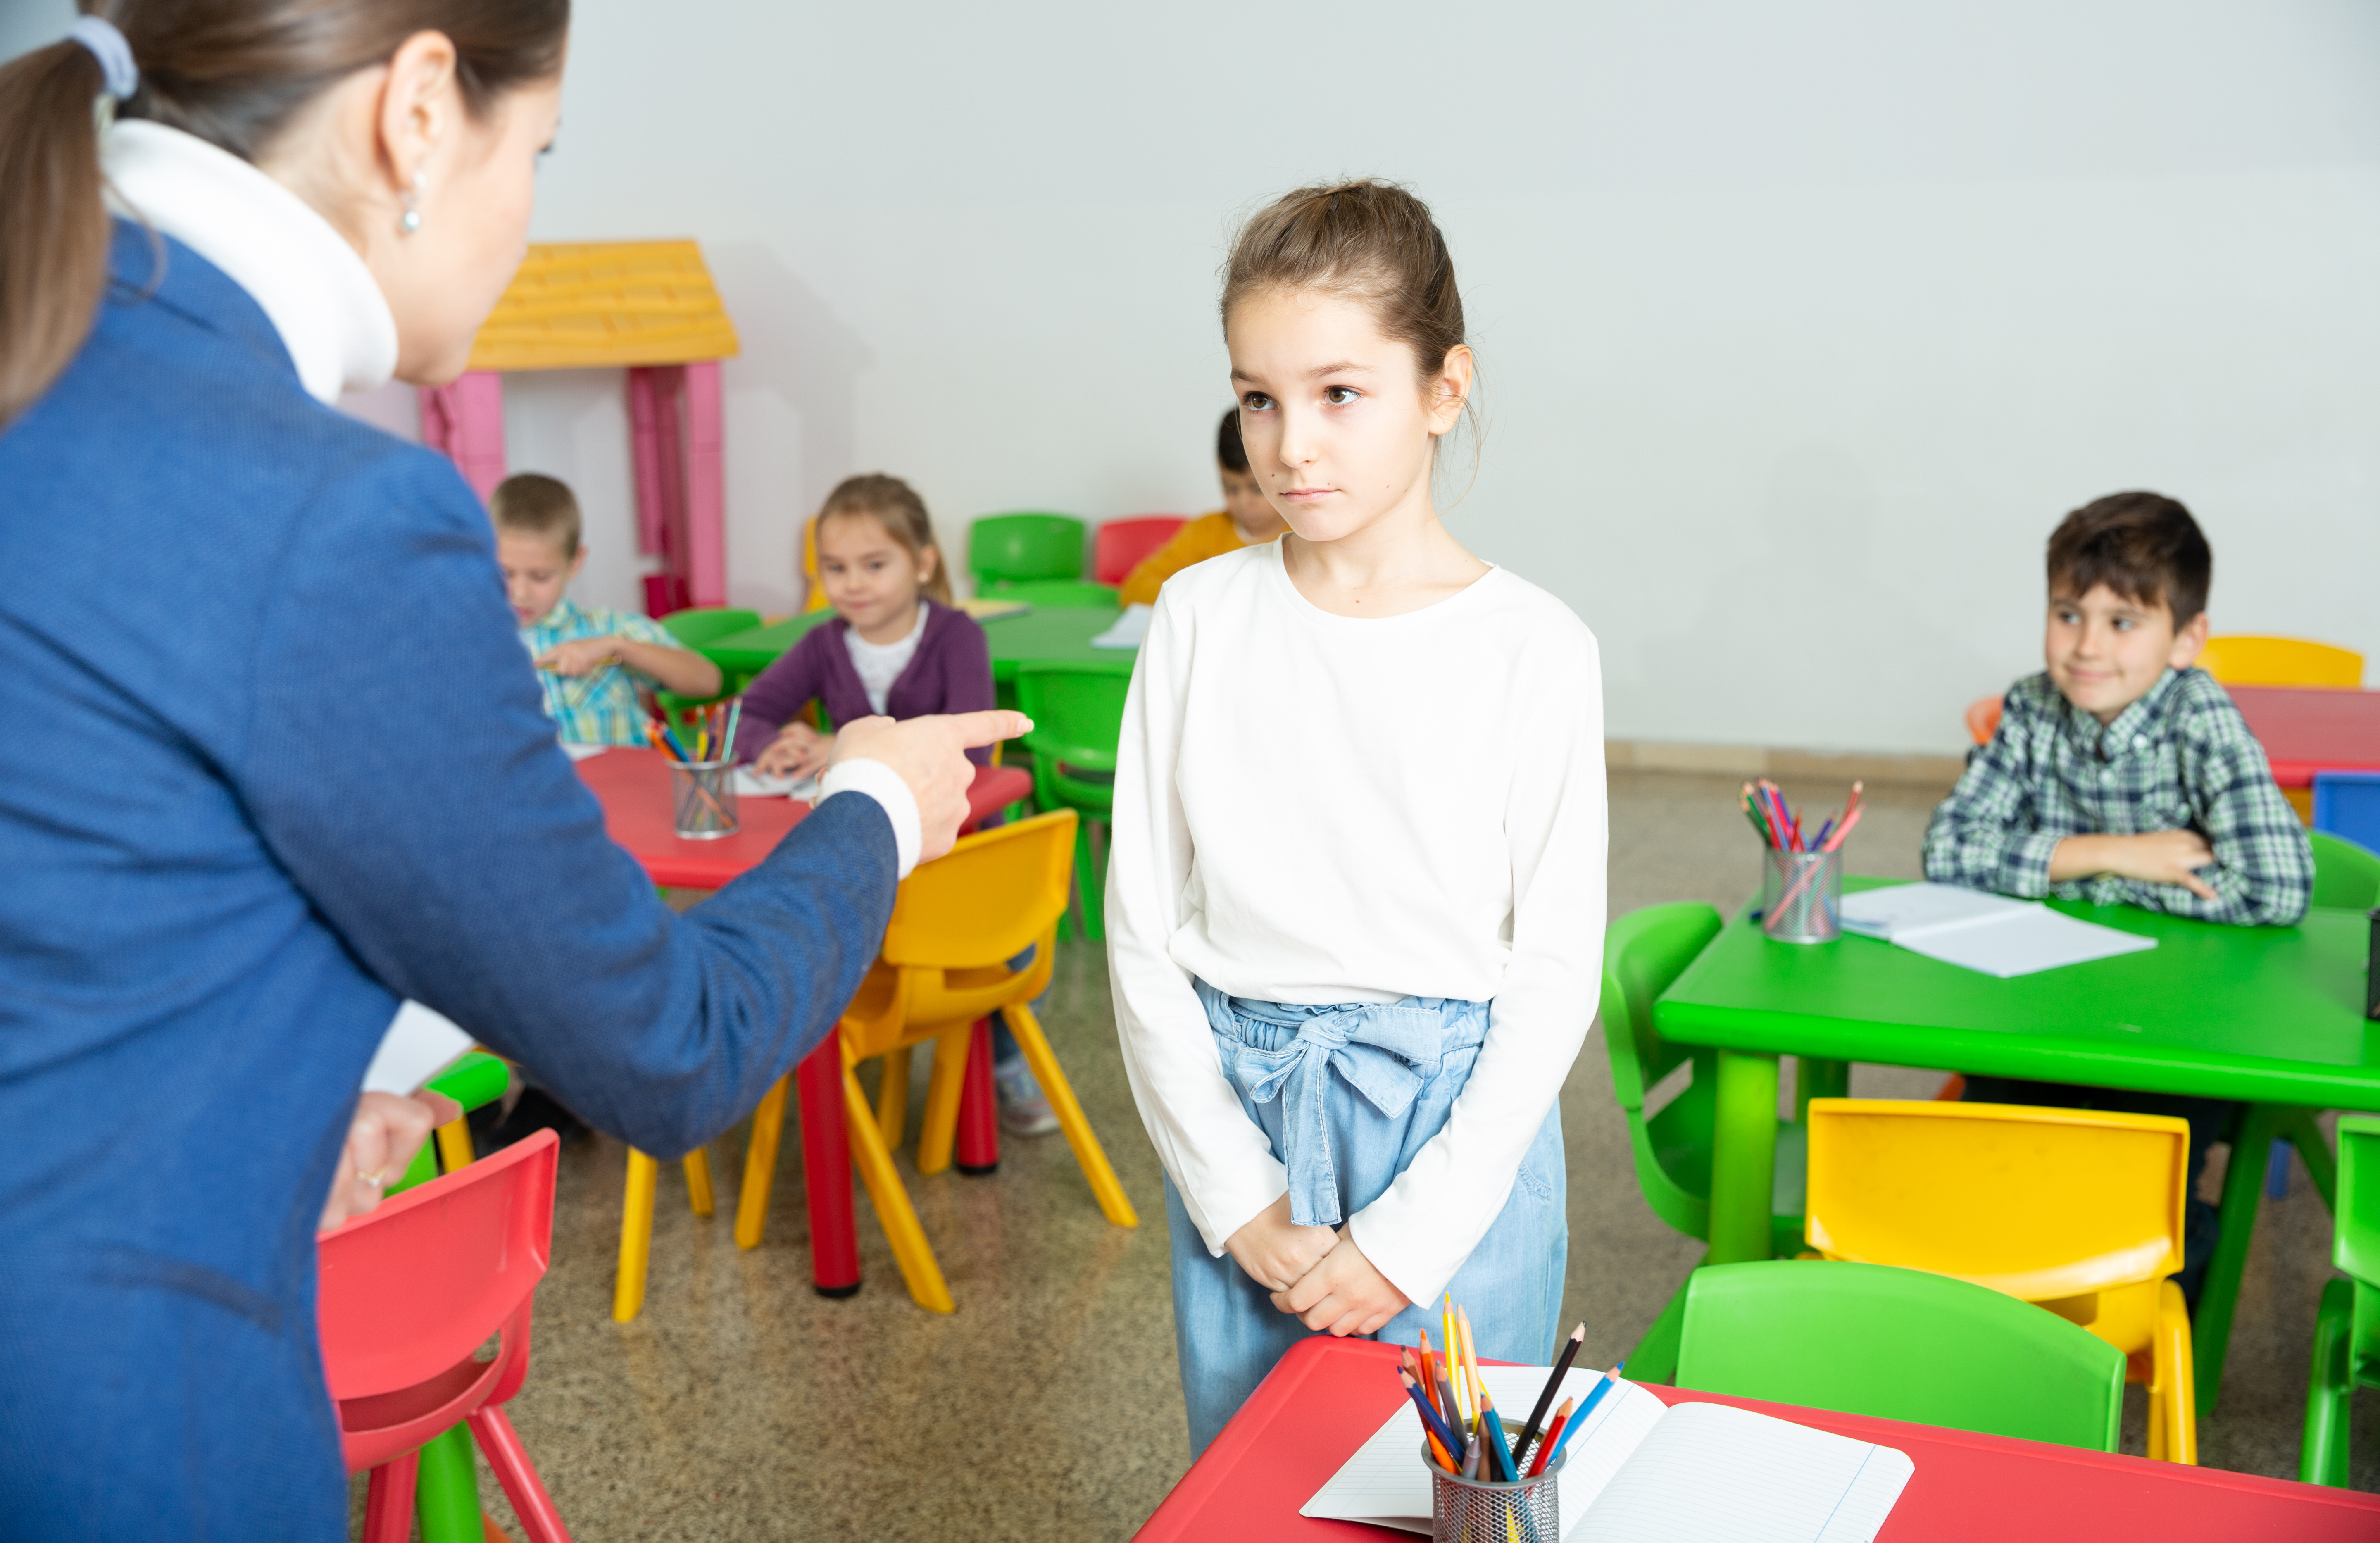 A teacher scolding a girl | Source: Shutterstock